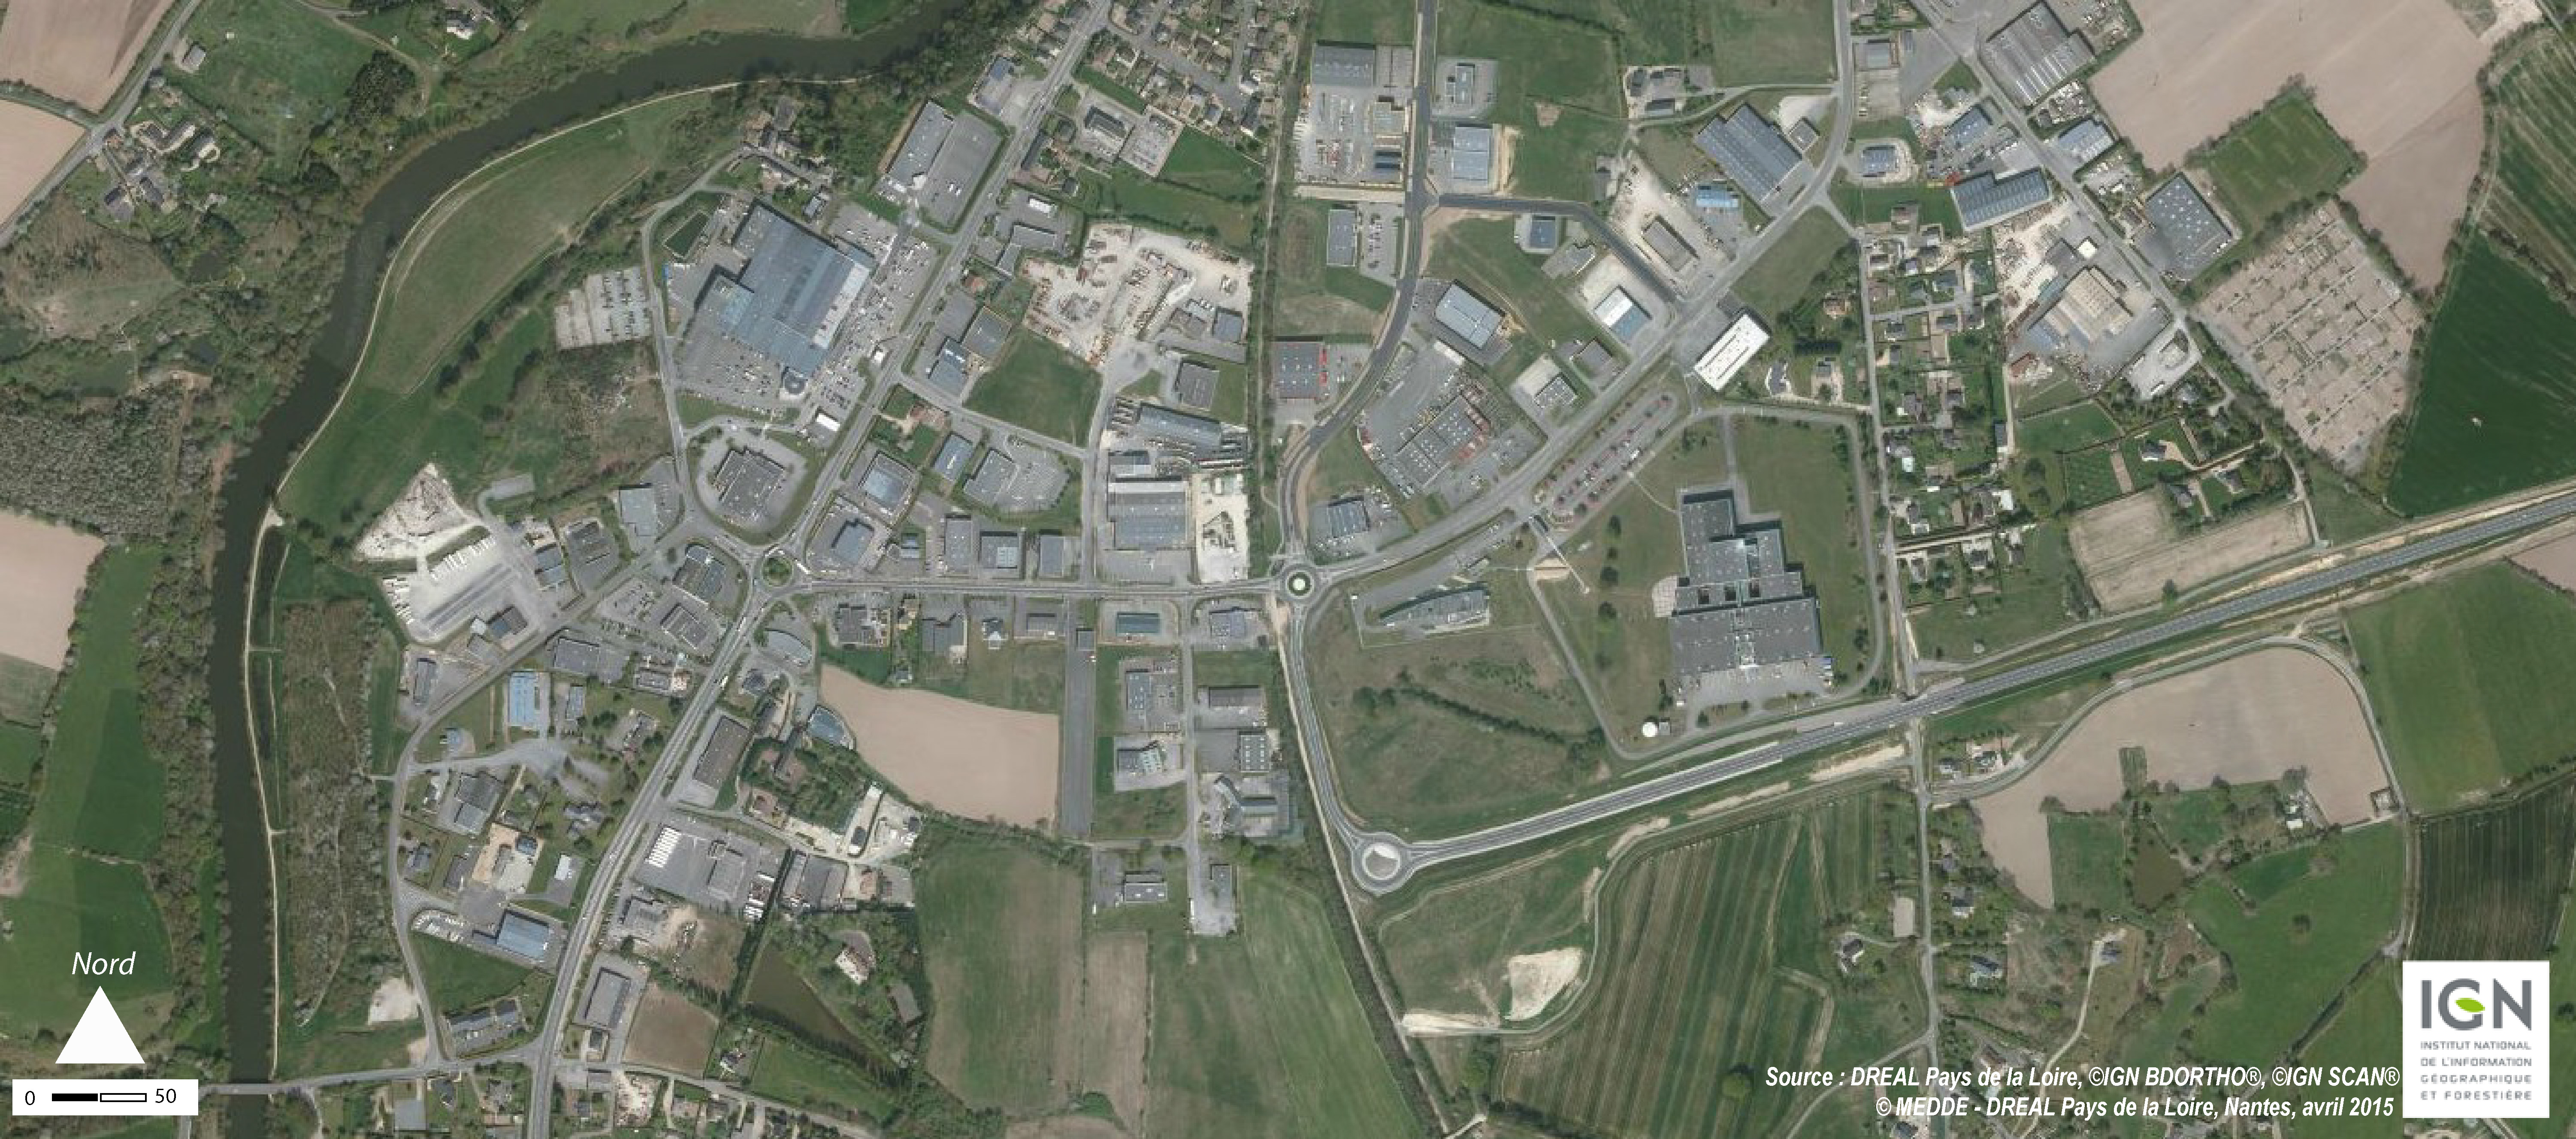 Les abords de la RN 162 ont accueilli le développement des principales zones d'activités de Mayenne (2010) en grand format (nouvelle fenêtre)